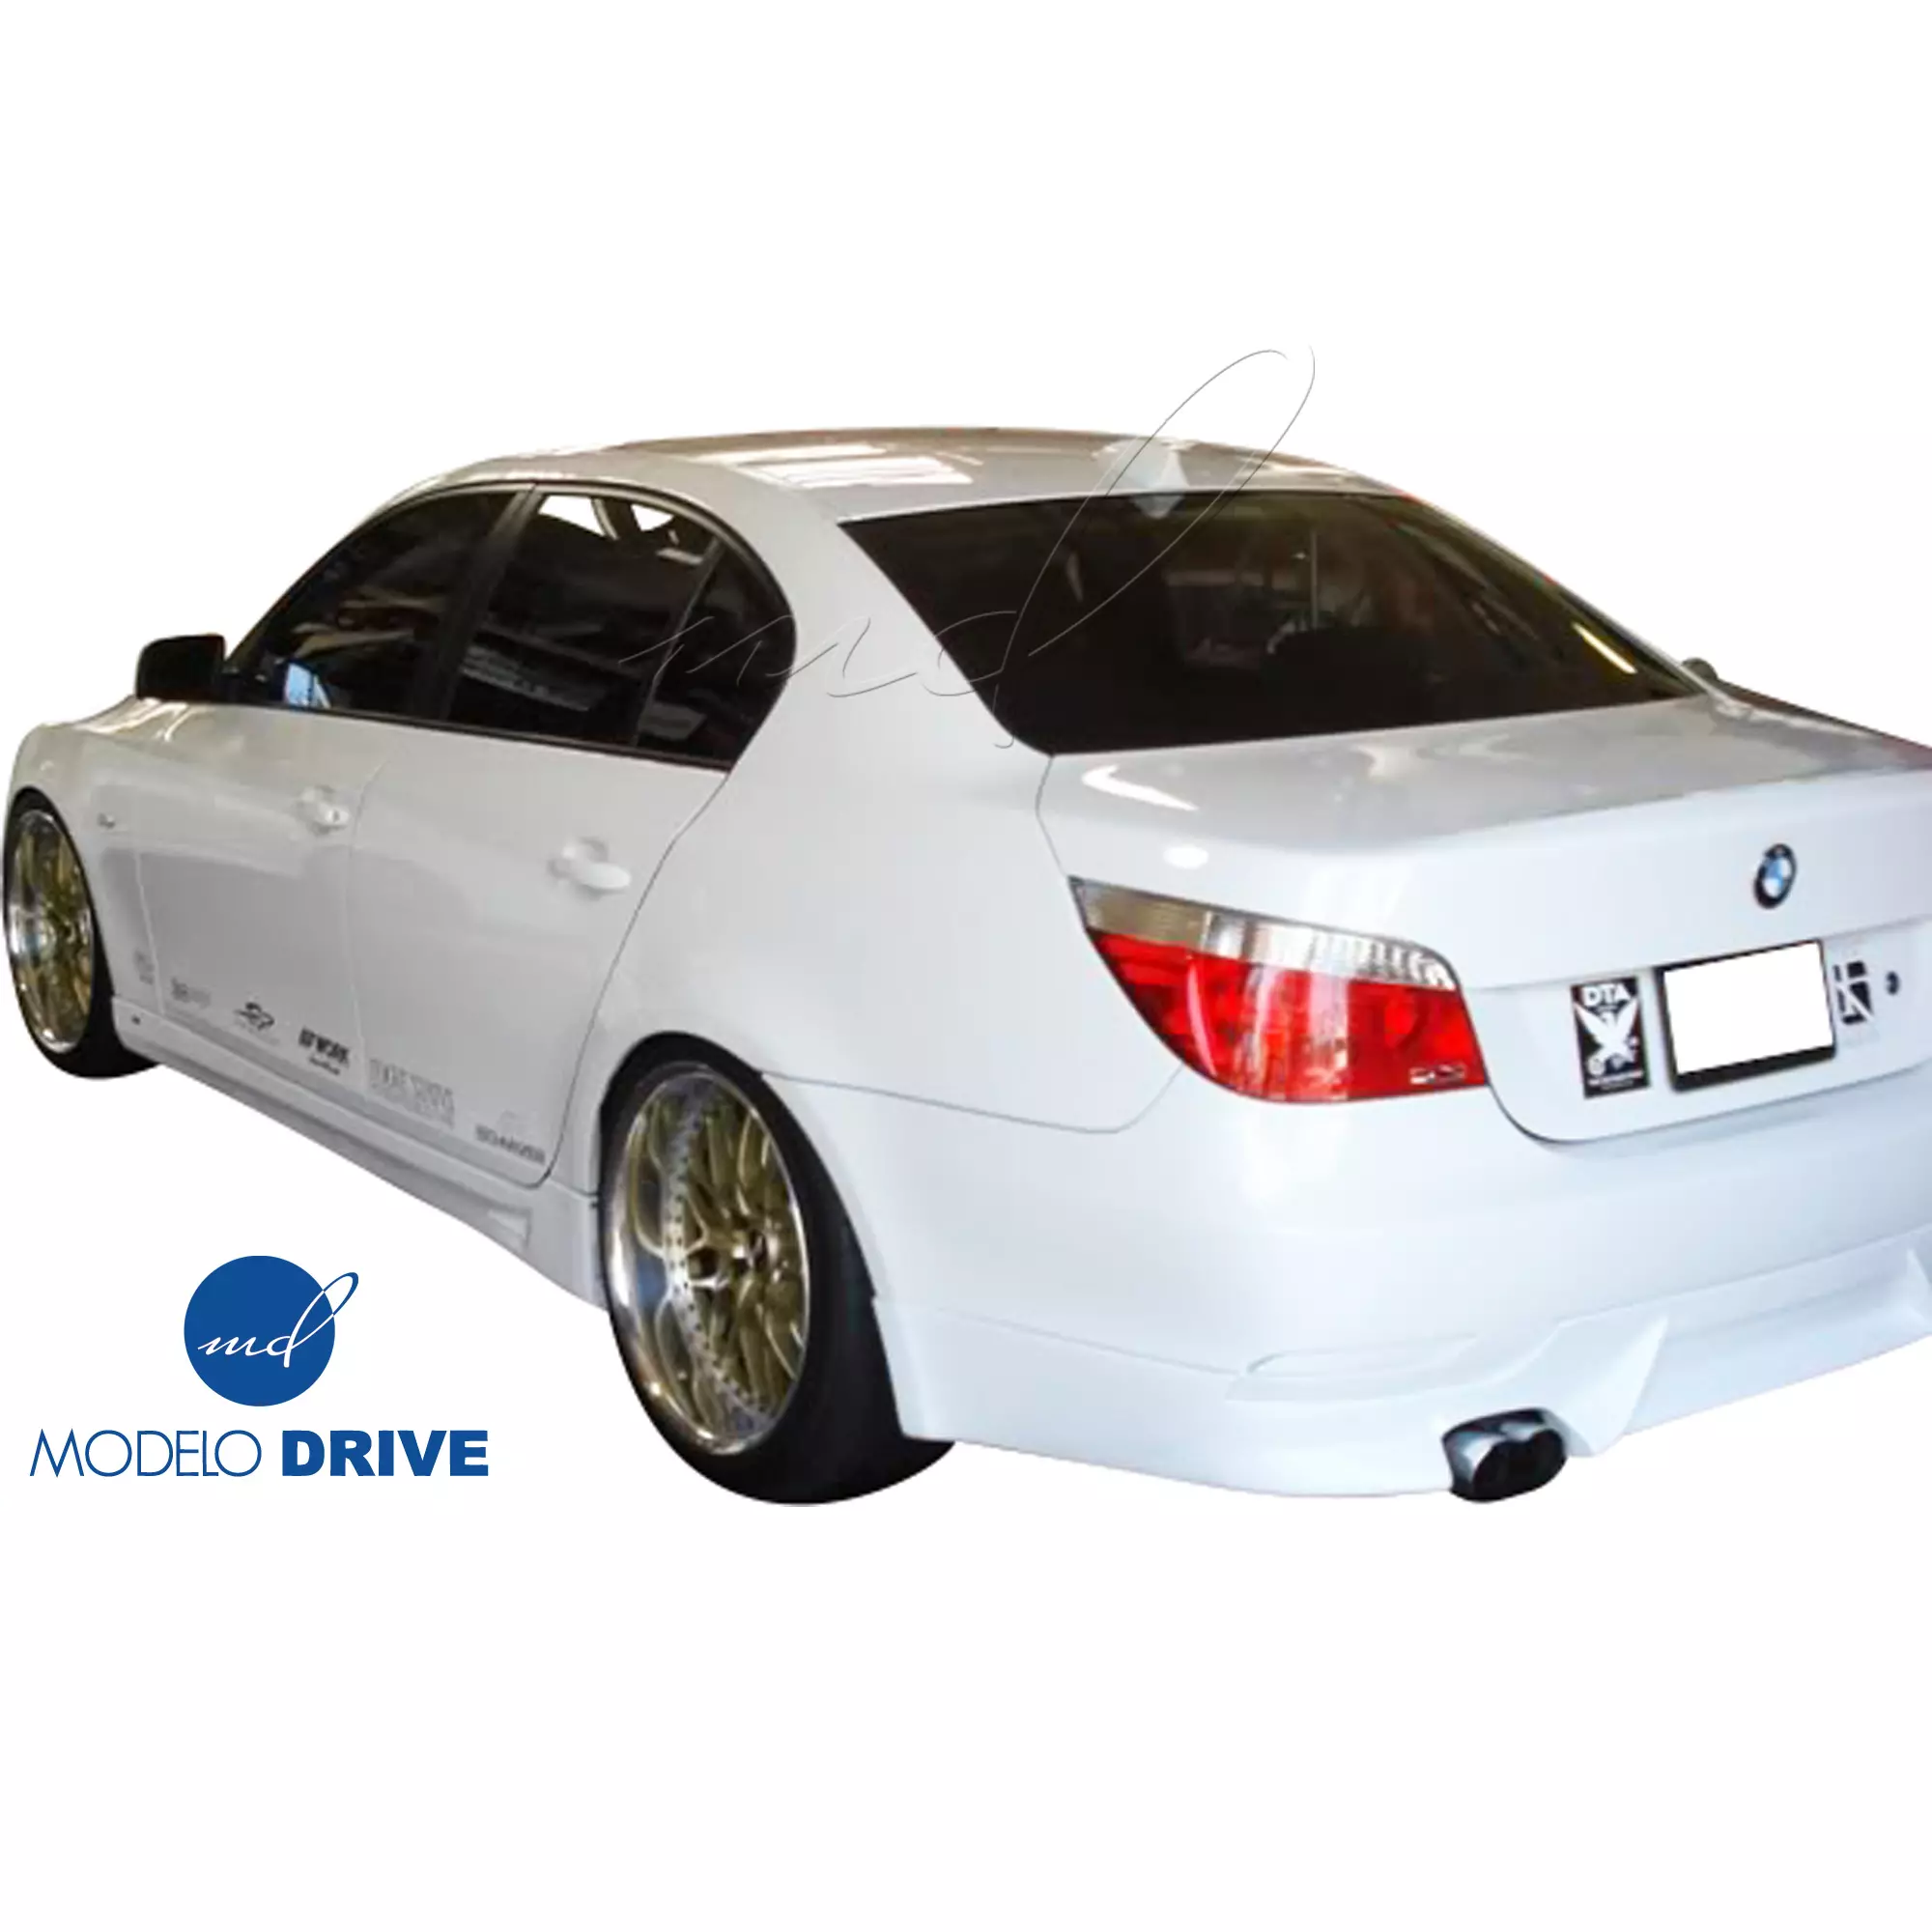 ModeloDrive FRP ASCH Body Kit 4pc > BMW 5-Series E60 2004-2010 > 4dr - Image 8